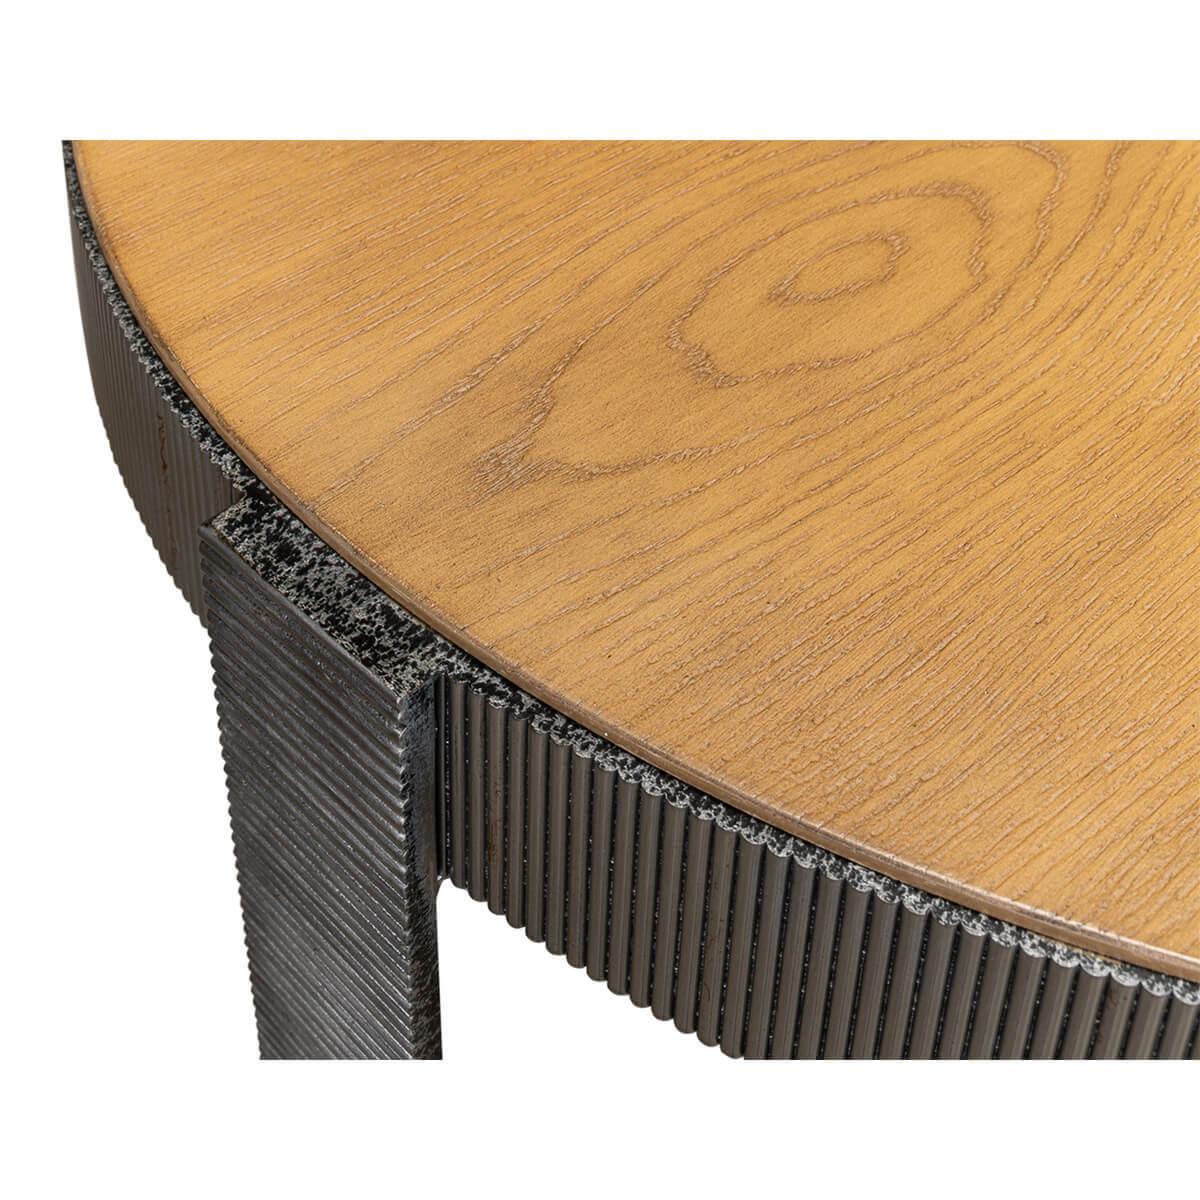 Table d'appoint ronde en noyer industriel et fer. Cette table est dotée d'une base à sangles en métal texturé et d'un plateau en placage de chêne blanc. 

DIMENSIONS
30 in. W x 30 in. D x 28 in. H.
 